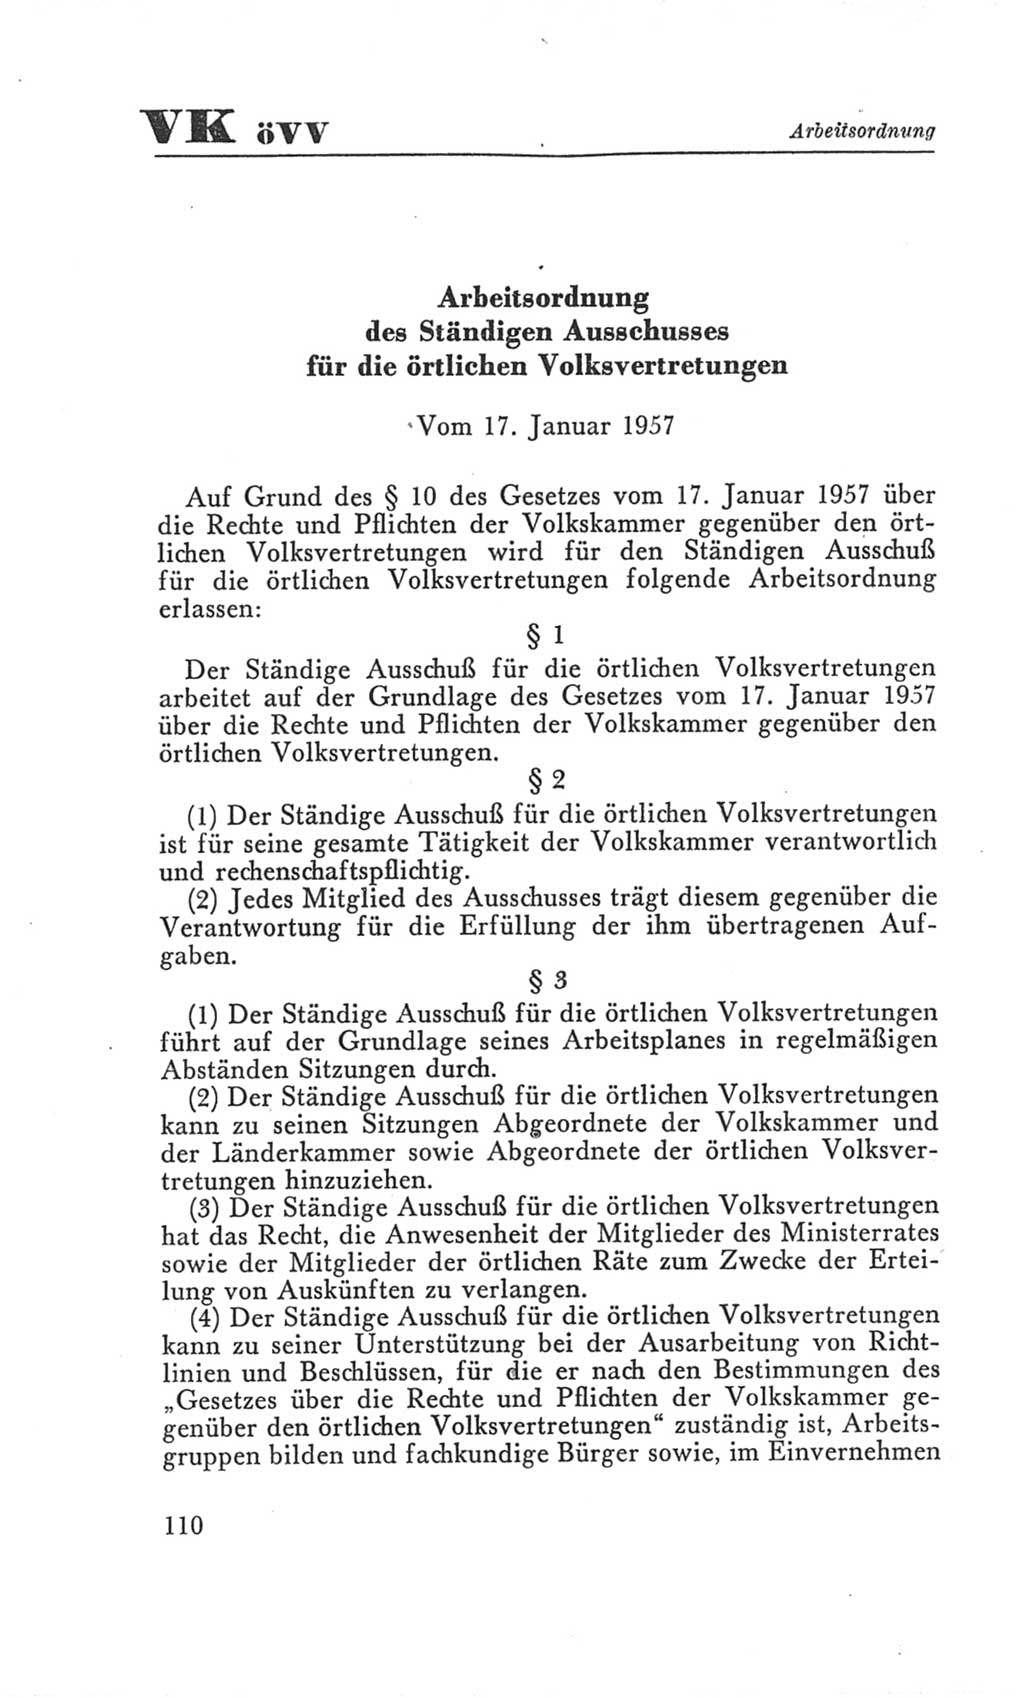 Handbuch der Volkskammer (VK) der Deutschen Demokratischen Republik (DDR), 3. Wahlperiode 1958-1963, Seite 110 (Hdb. VK. DDR 3. WP. 1958-1963, S. 110)